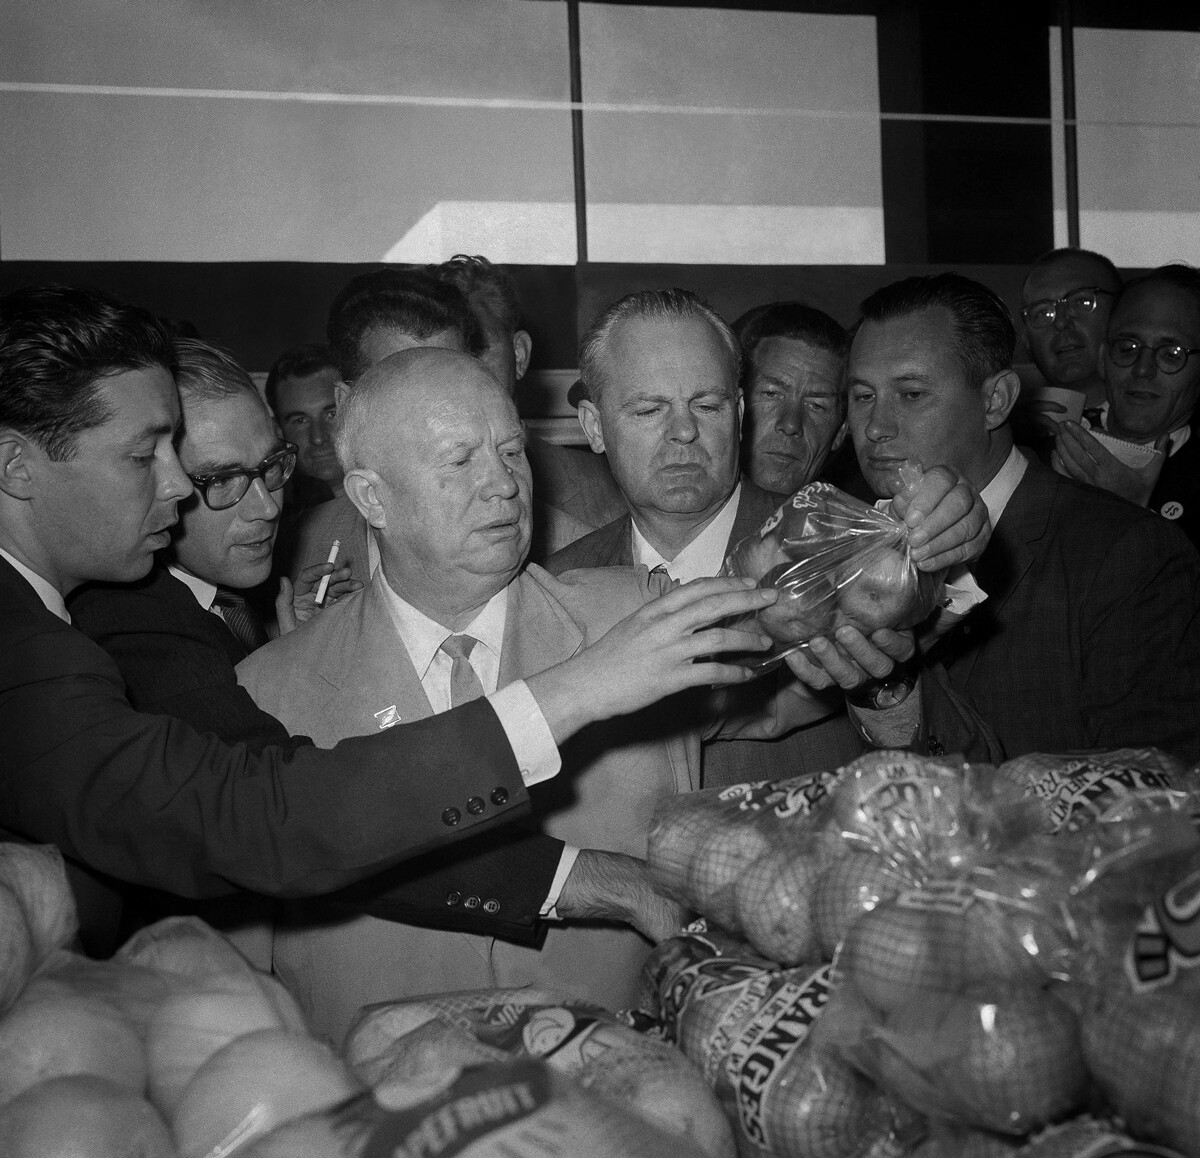 Sovjetski premier Hruščov 21. septembra 1959 v San Franciscu v supermarketu drži vrečko, polno jabolk, in sprašuje prodajalca za ceno. 